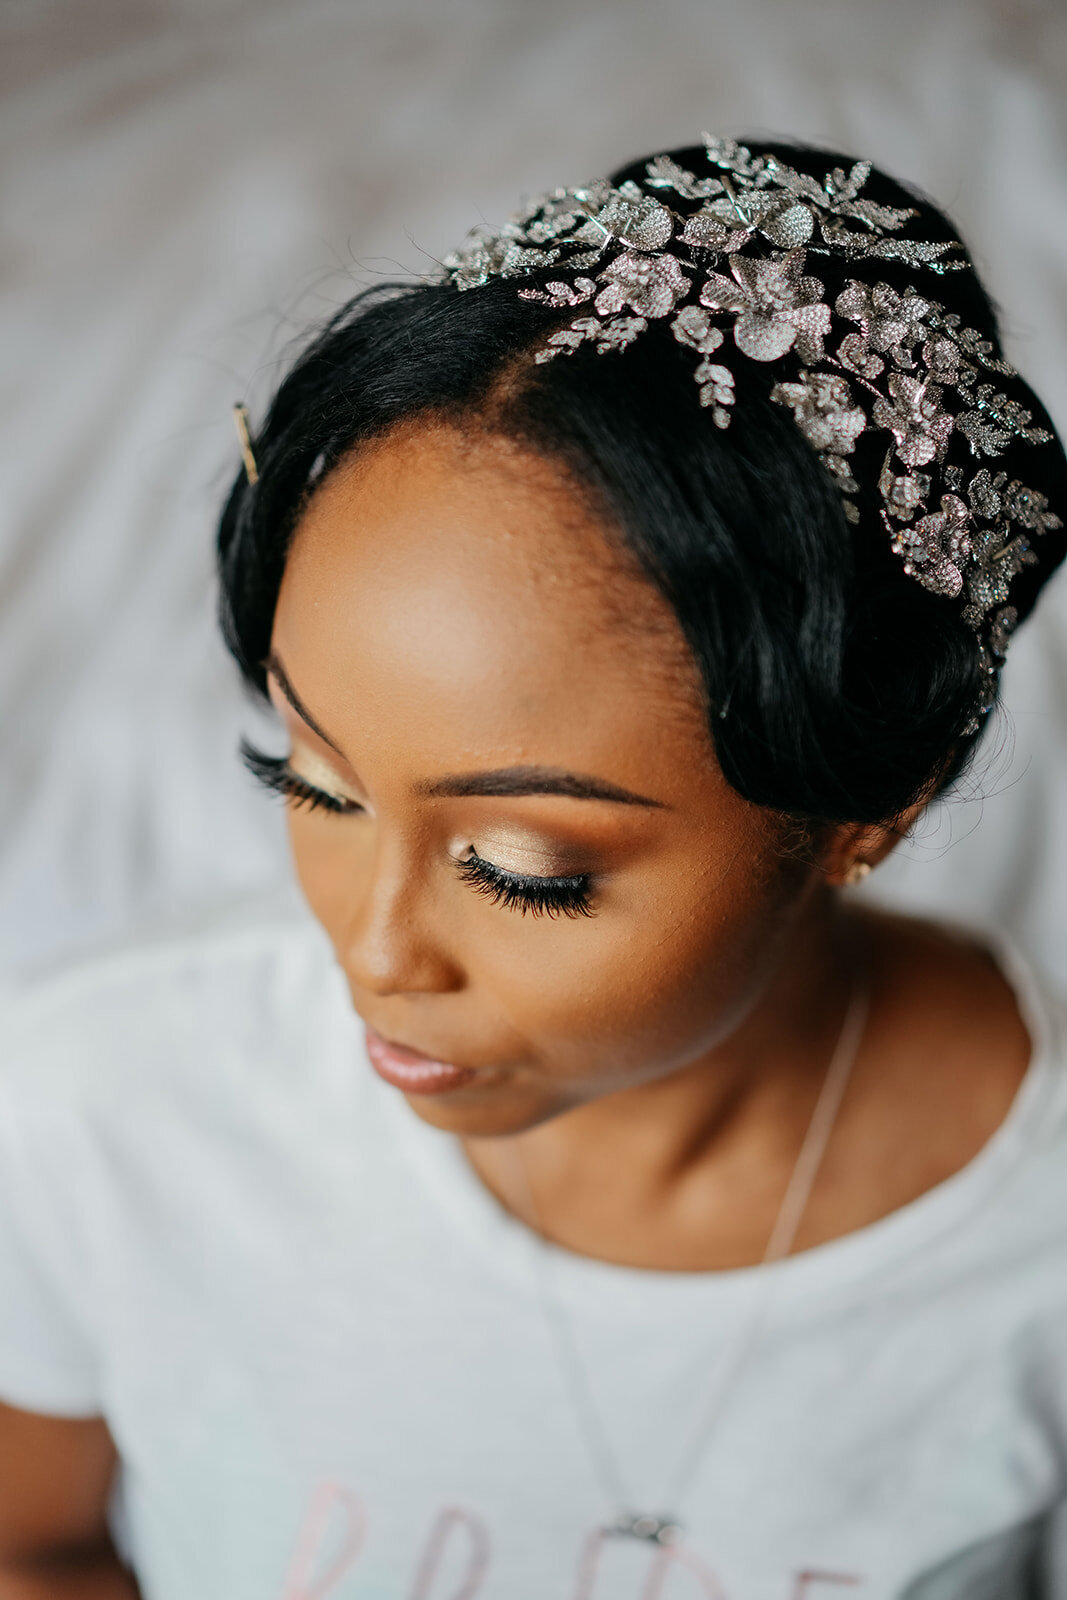 Silver floral headpiece on bride